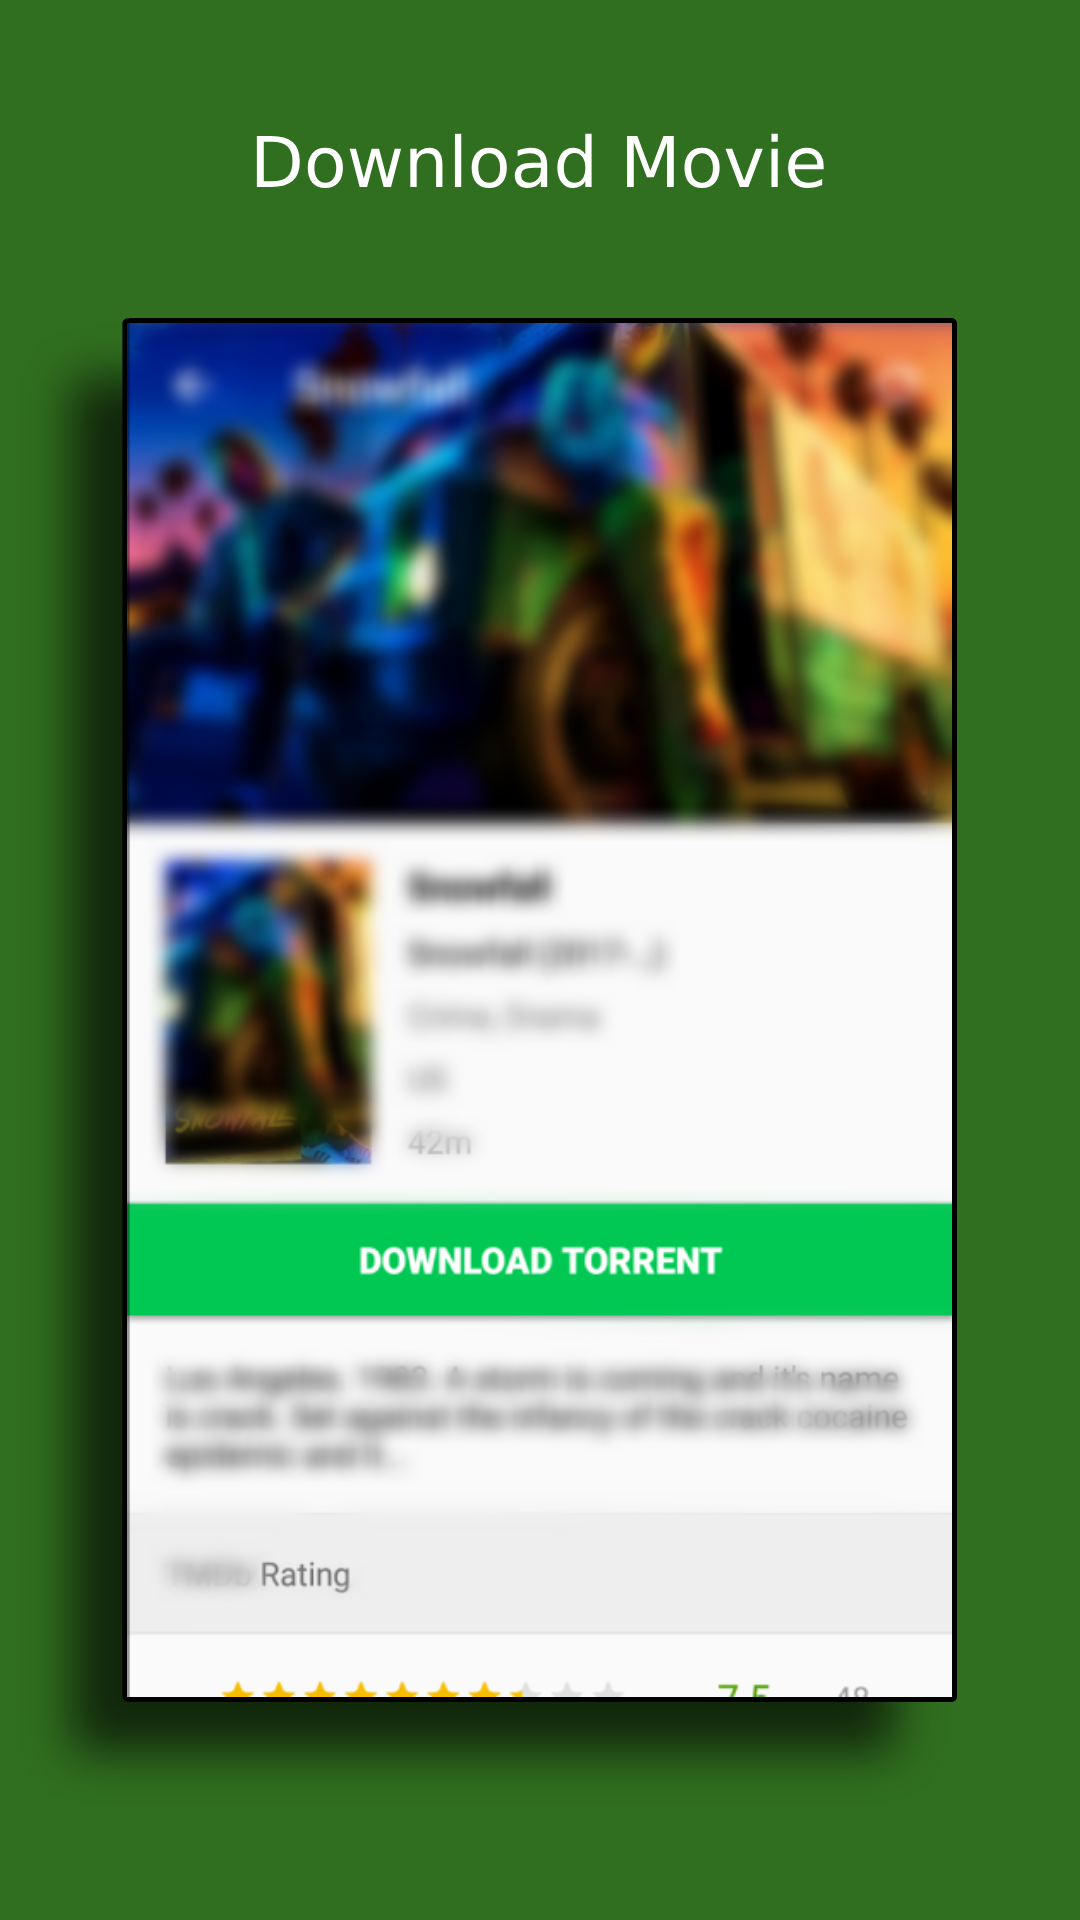 Movie Downloader | Torrent Magnet Downloader APK 1.7 for Android